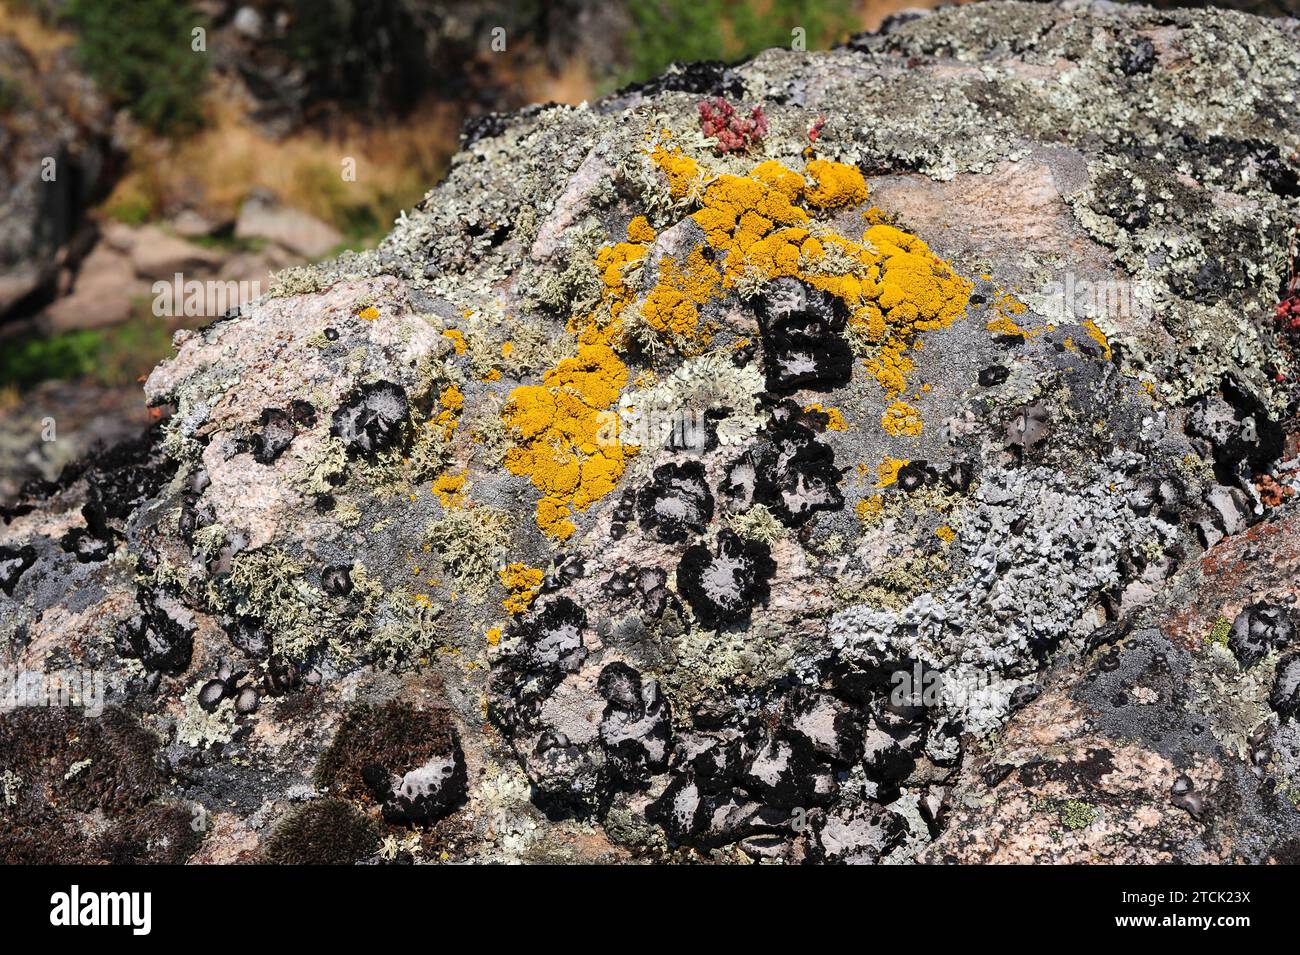 Lichen community dominated by Umbilicaria pustulata or Lasallia pustulata a foliose lichen accompanied by Ramalina (fruticulose) and Candelariella (cr Stock Photo